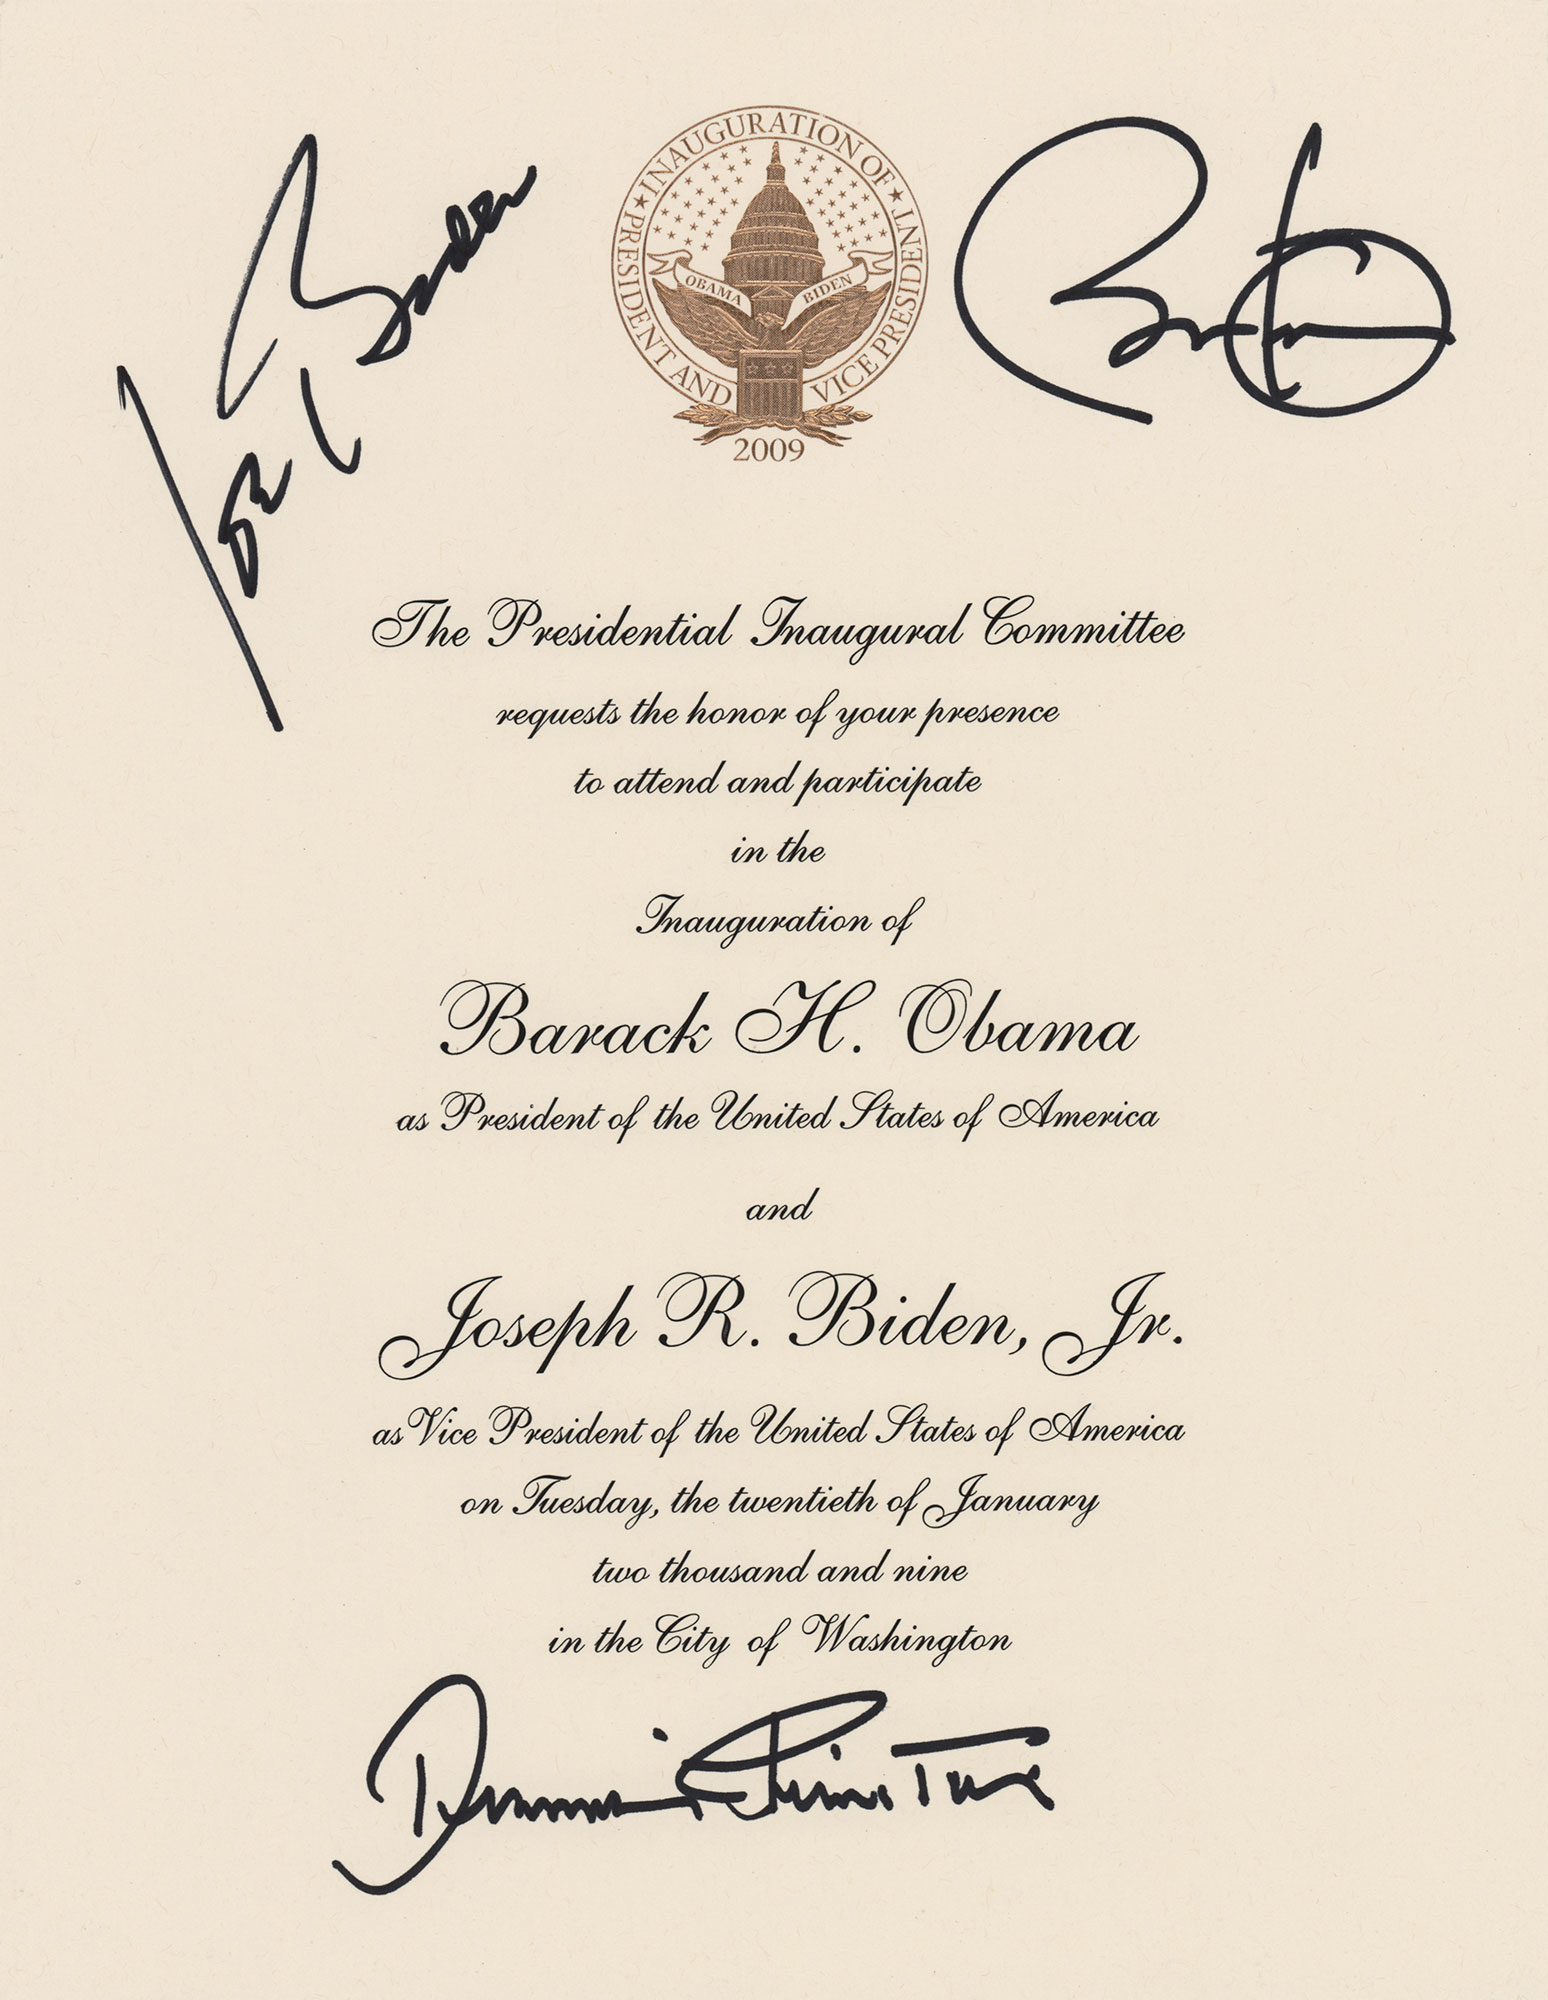 Lot #30 Barack Obama and Joe Biden Signed Inauguration Invitation and Ephemera - Image 1